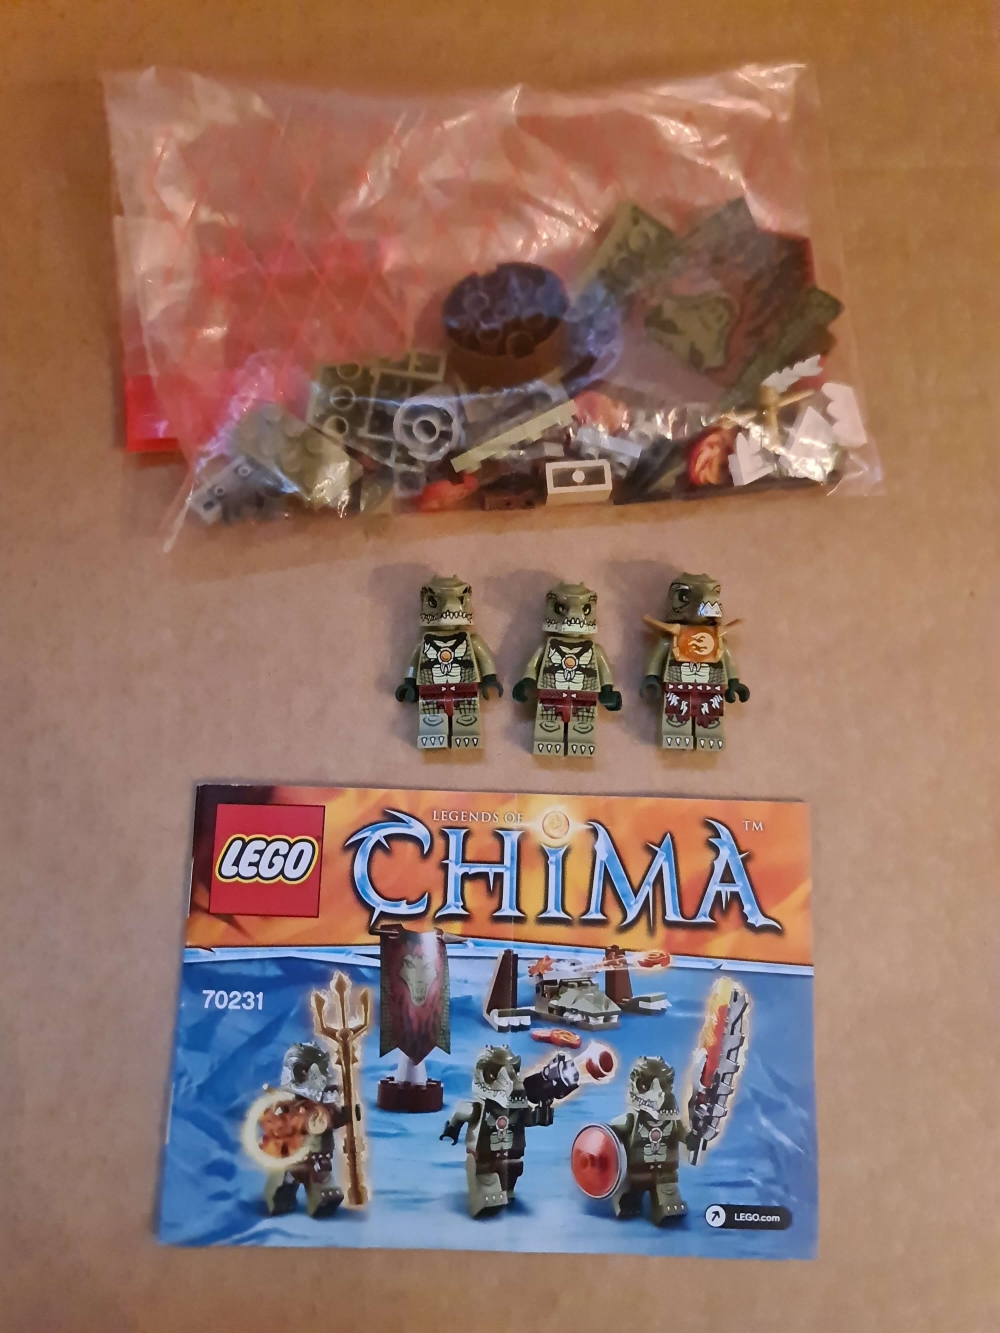 Sett 70231 fra Lego Chima serien. 

Meget pent. Komplett med manual.